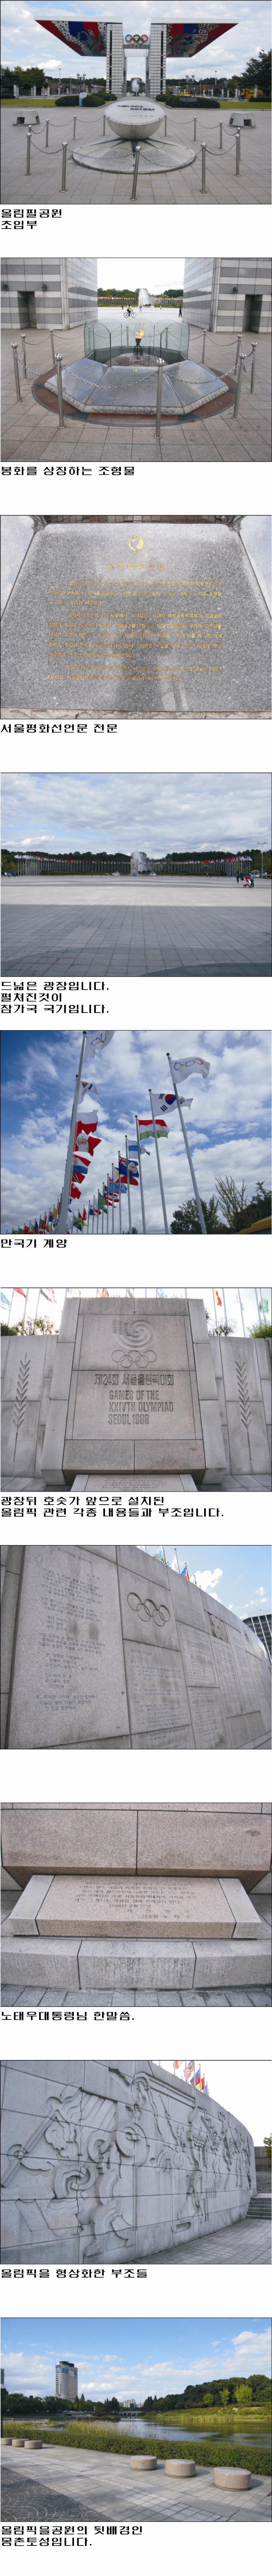 올림픽공원 그리고 몽촌토성